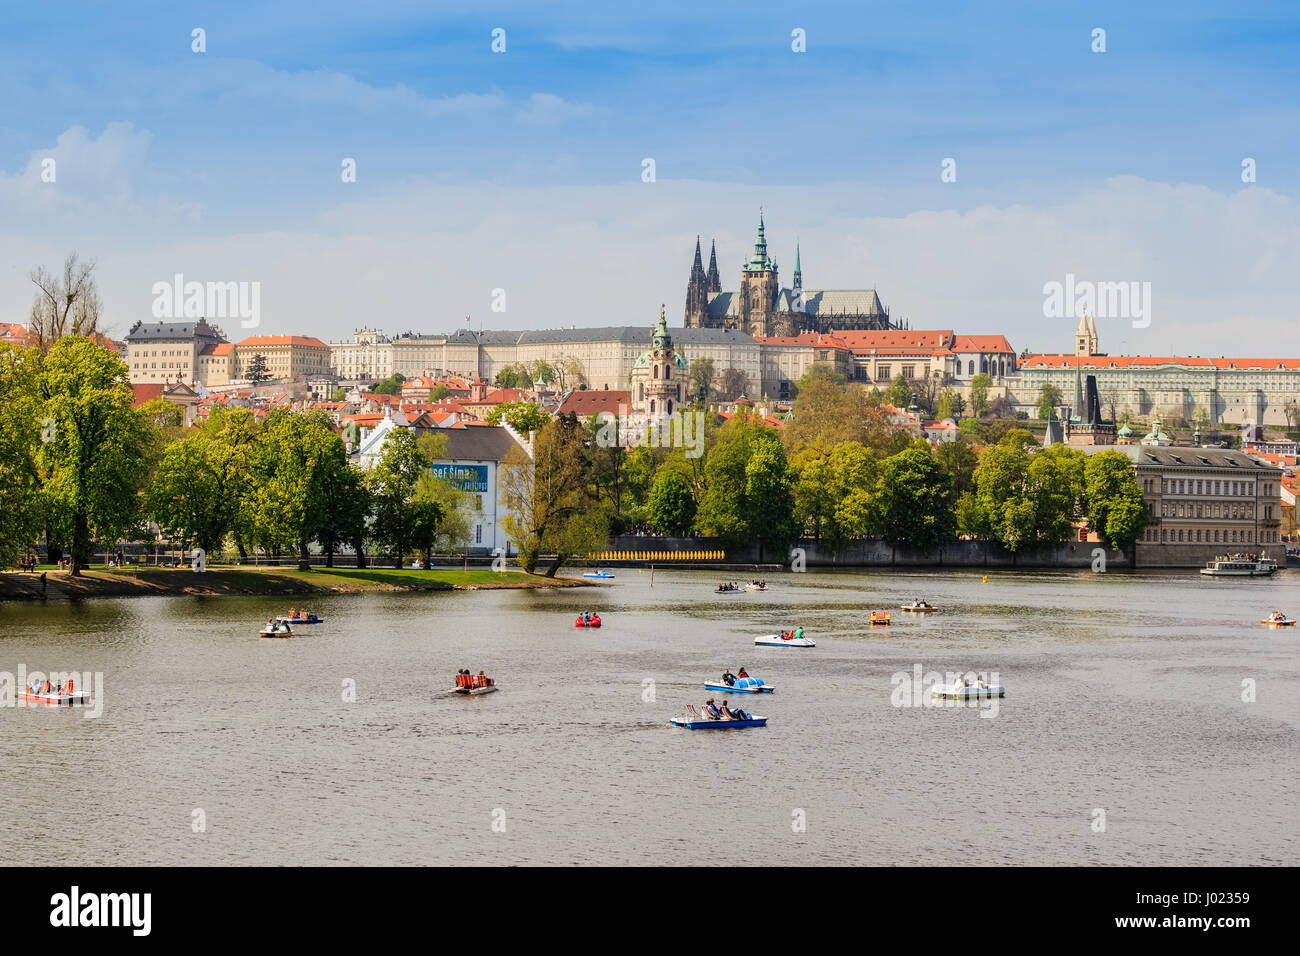 Blick auf die Stadt Prag in der Tschechischen Republik mit farbenfrohen Tretboote auf dem Fluss Vltava an einem schönen Tag (Tschechien) Stockfoto